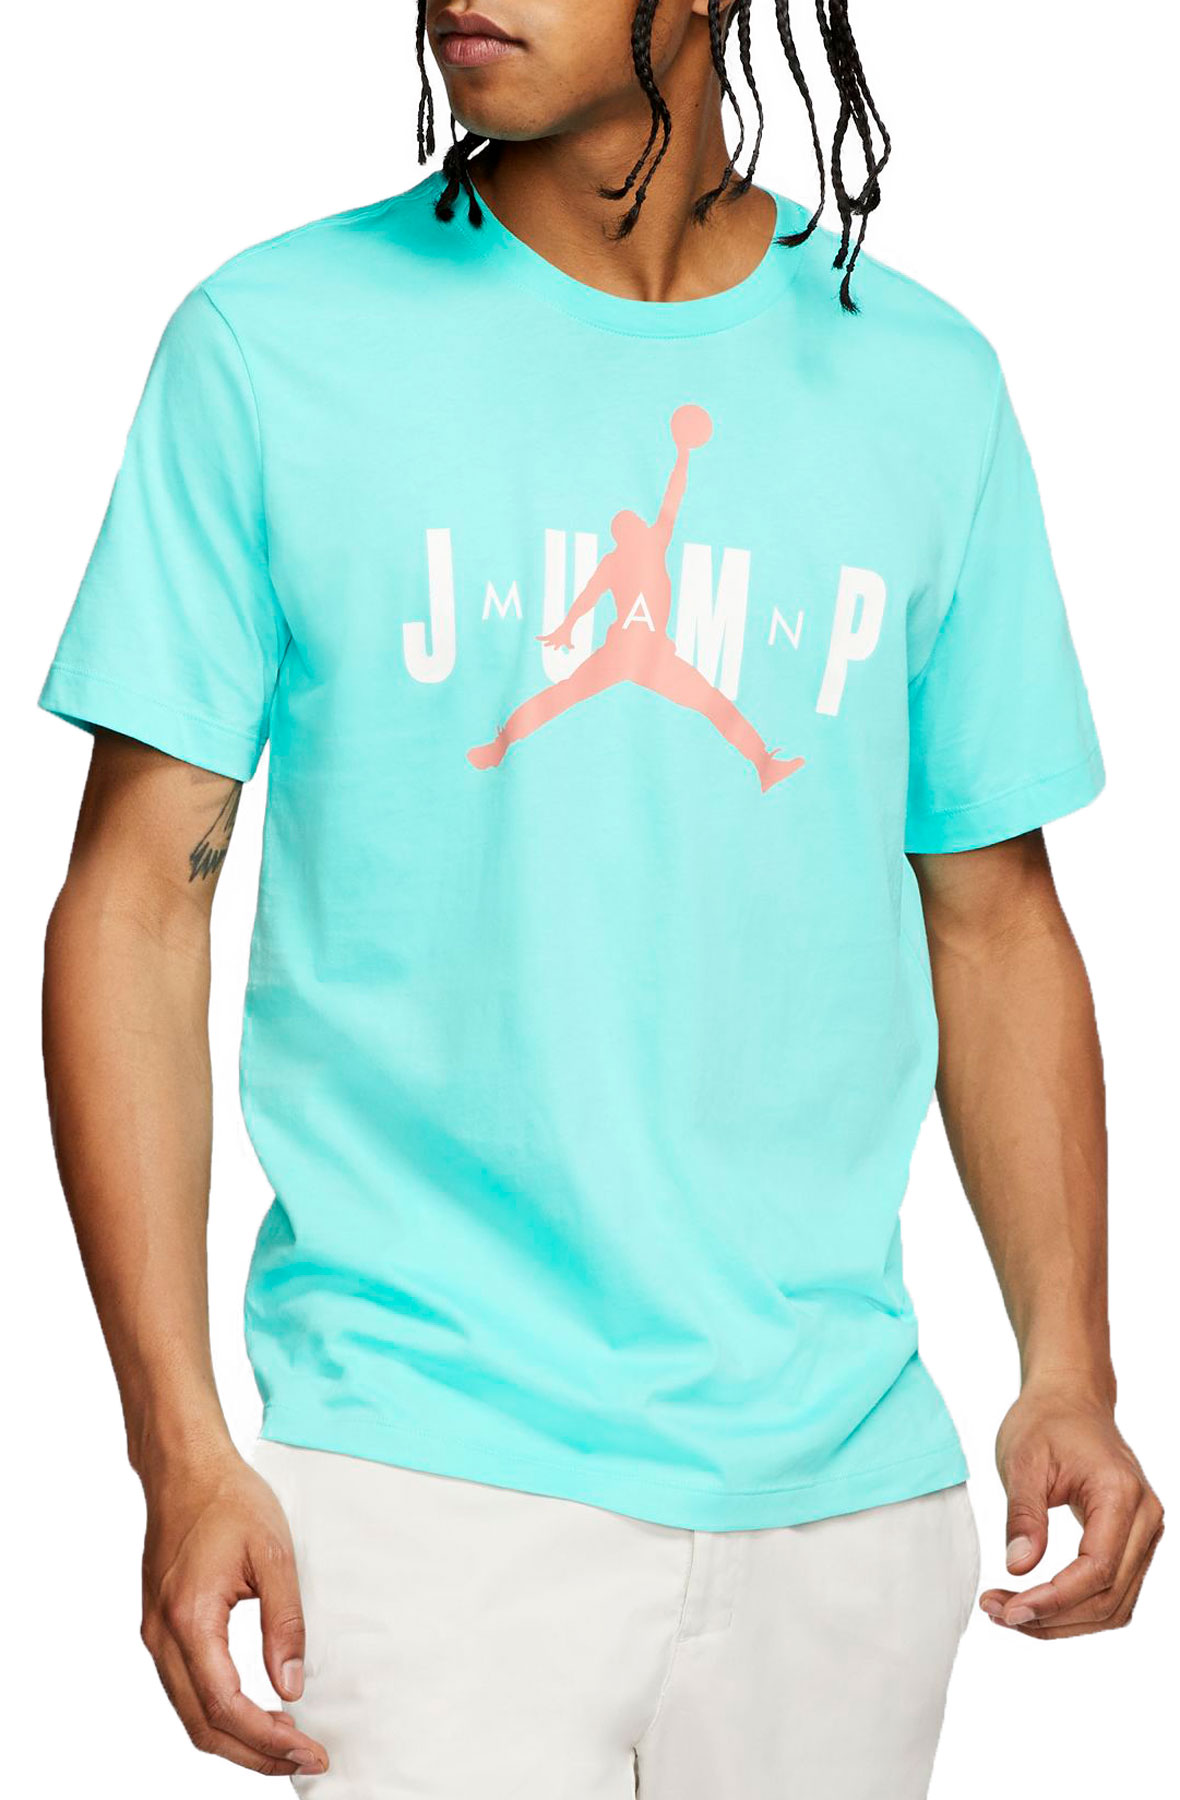 aqua blue jordan shirt